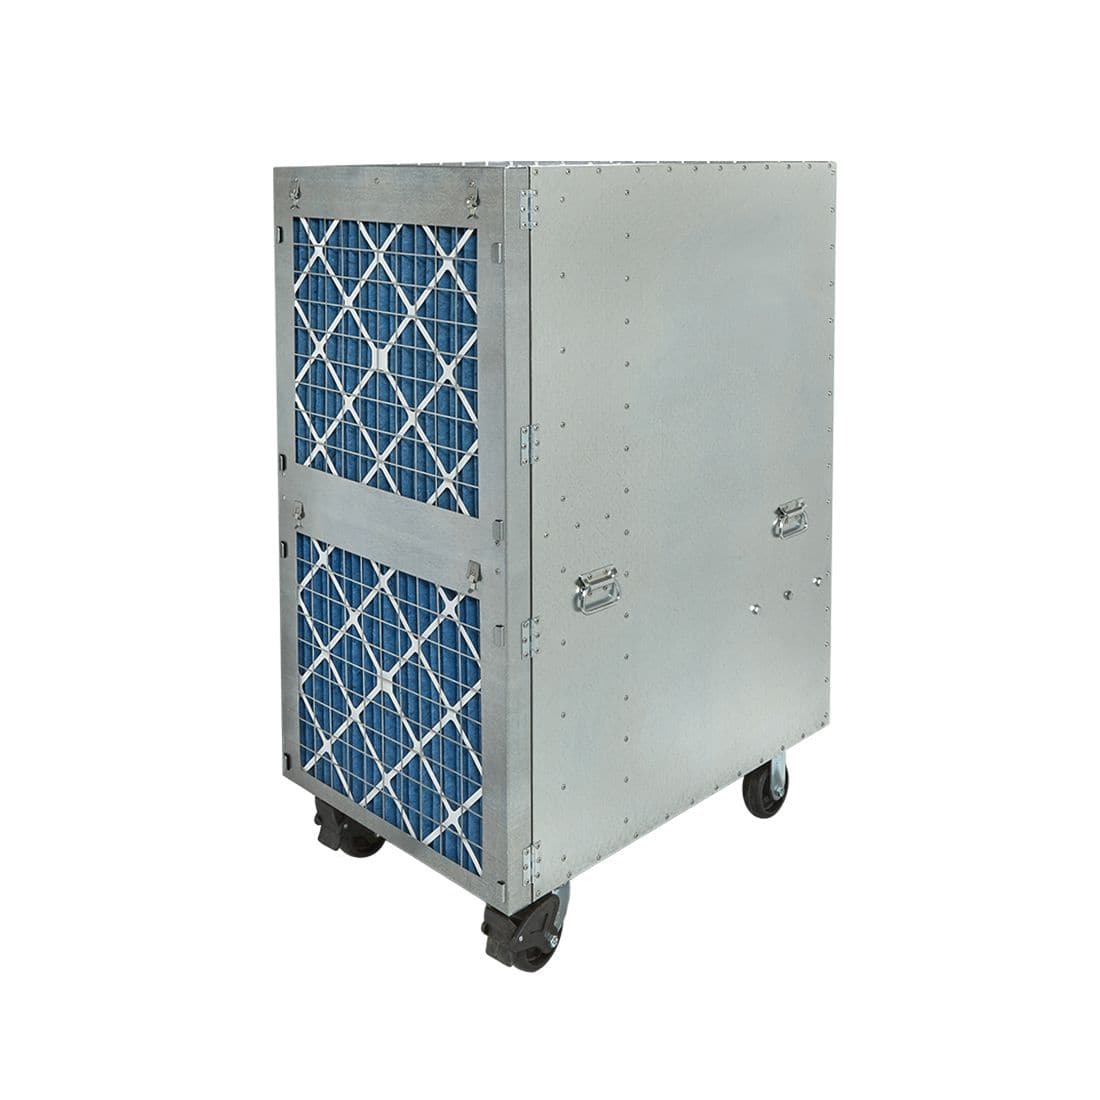 Abatement Technologies HEPA-AIRE® PAS5000 Portable Air Scrubber - 4000 CFM